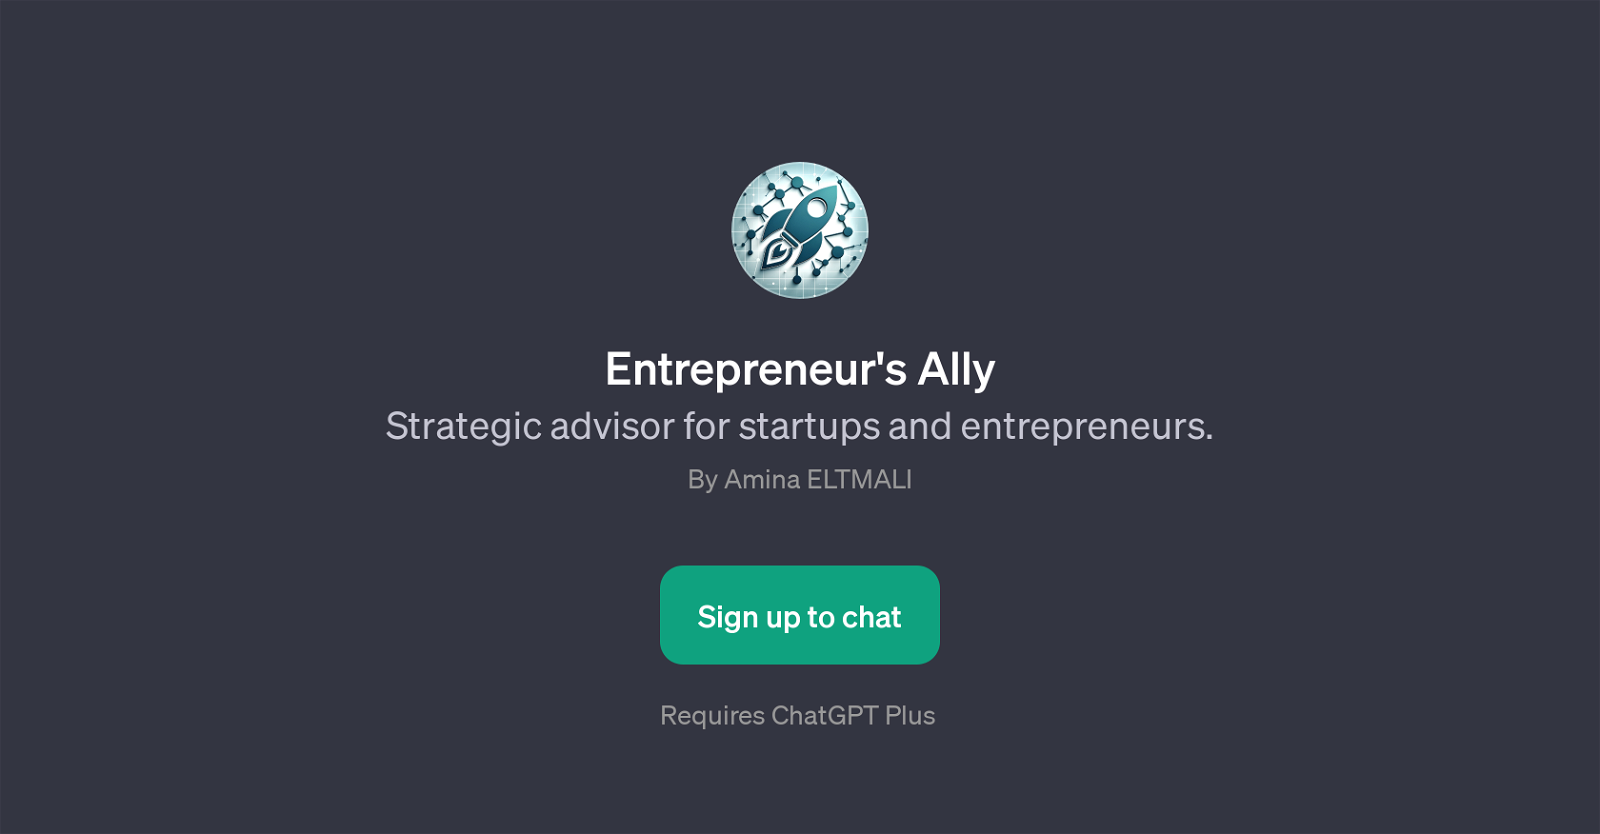 Entrepreneur's Ally website